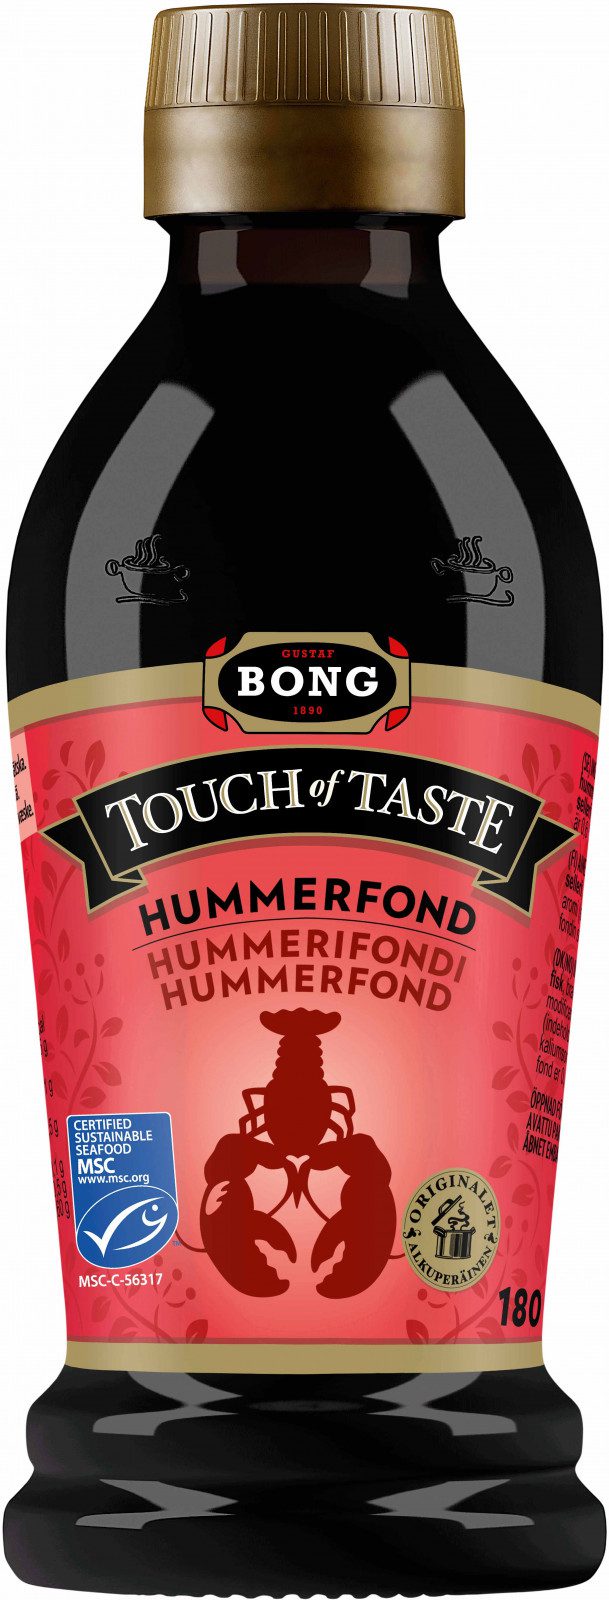 Bong touch of taste - Hummerfond